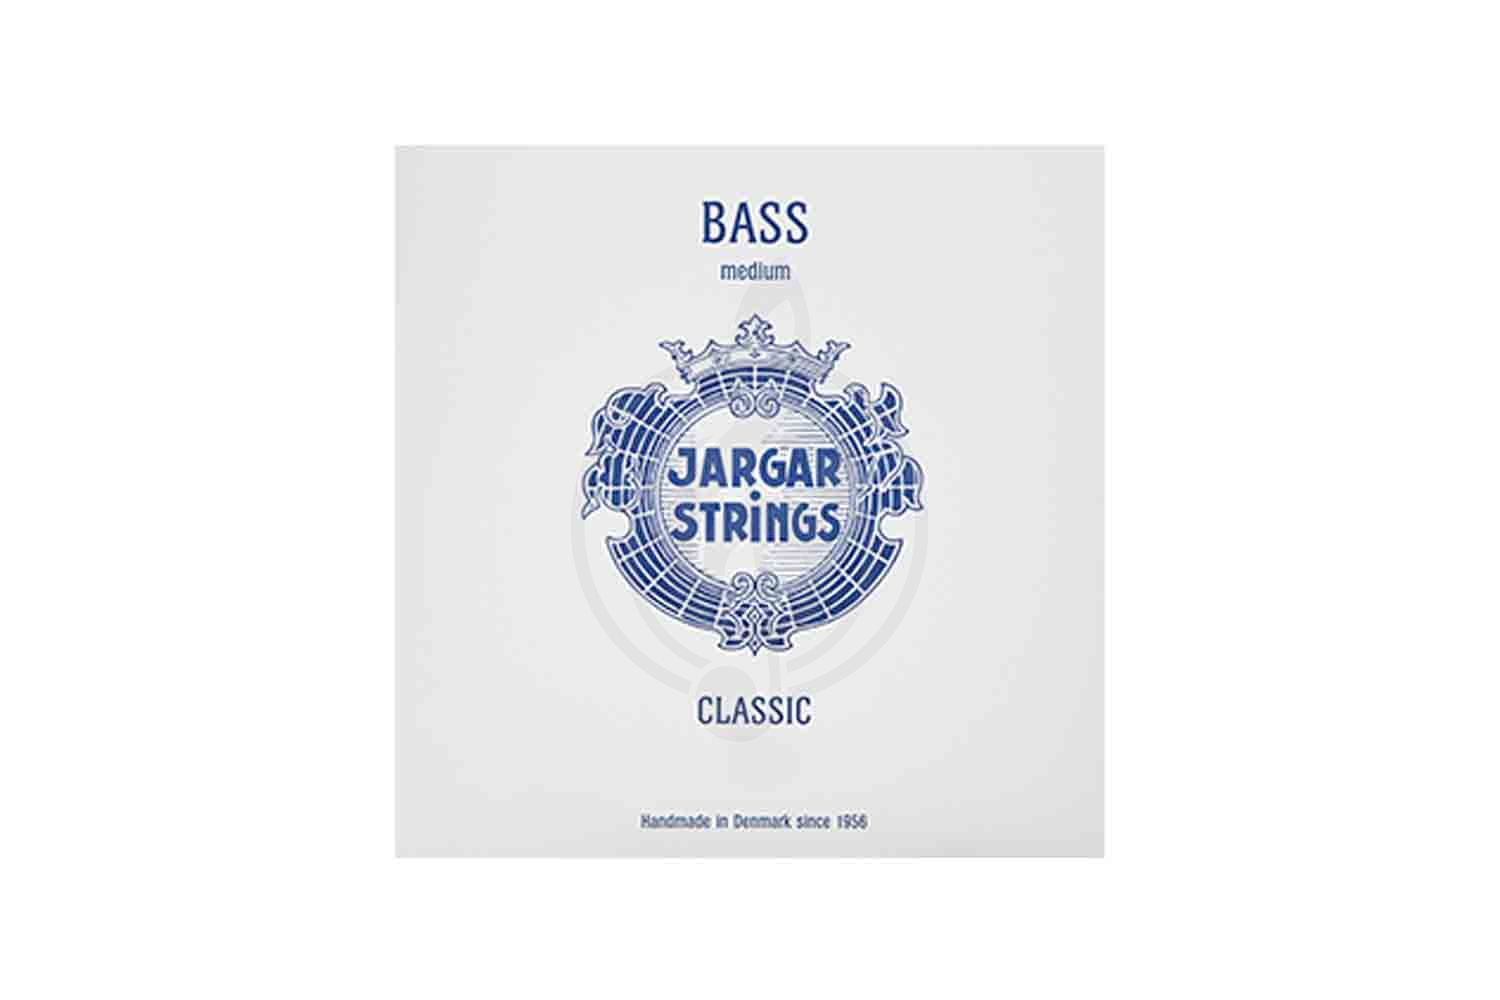 Струны для контрабаса Jargar Strings Bass-A Classic - Отдельная струна А/Ля для контрабаса размером 4/4, среднее натяжение, Jargar Strings Bass-A в магазине DominantaMusic - фото 1